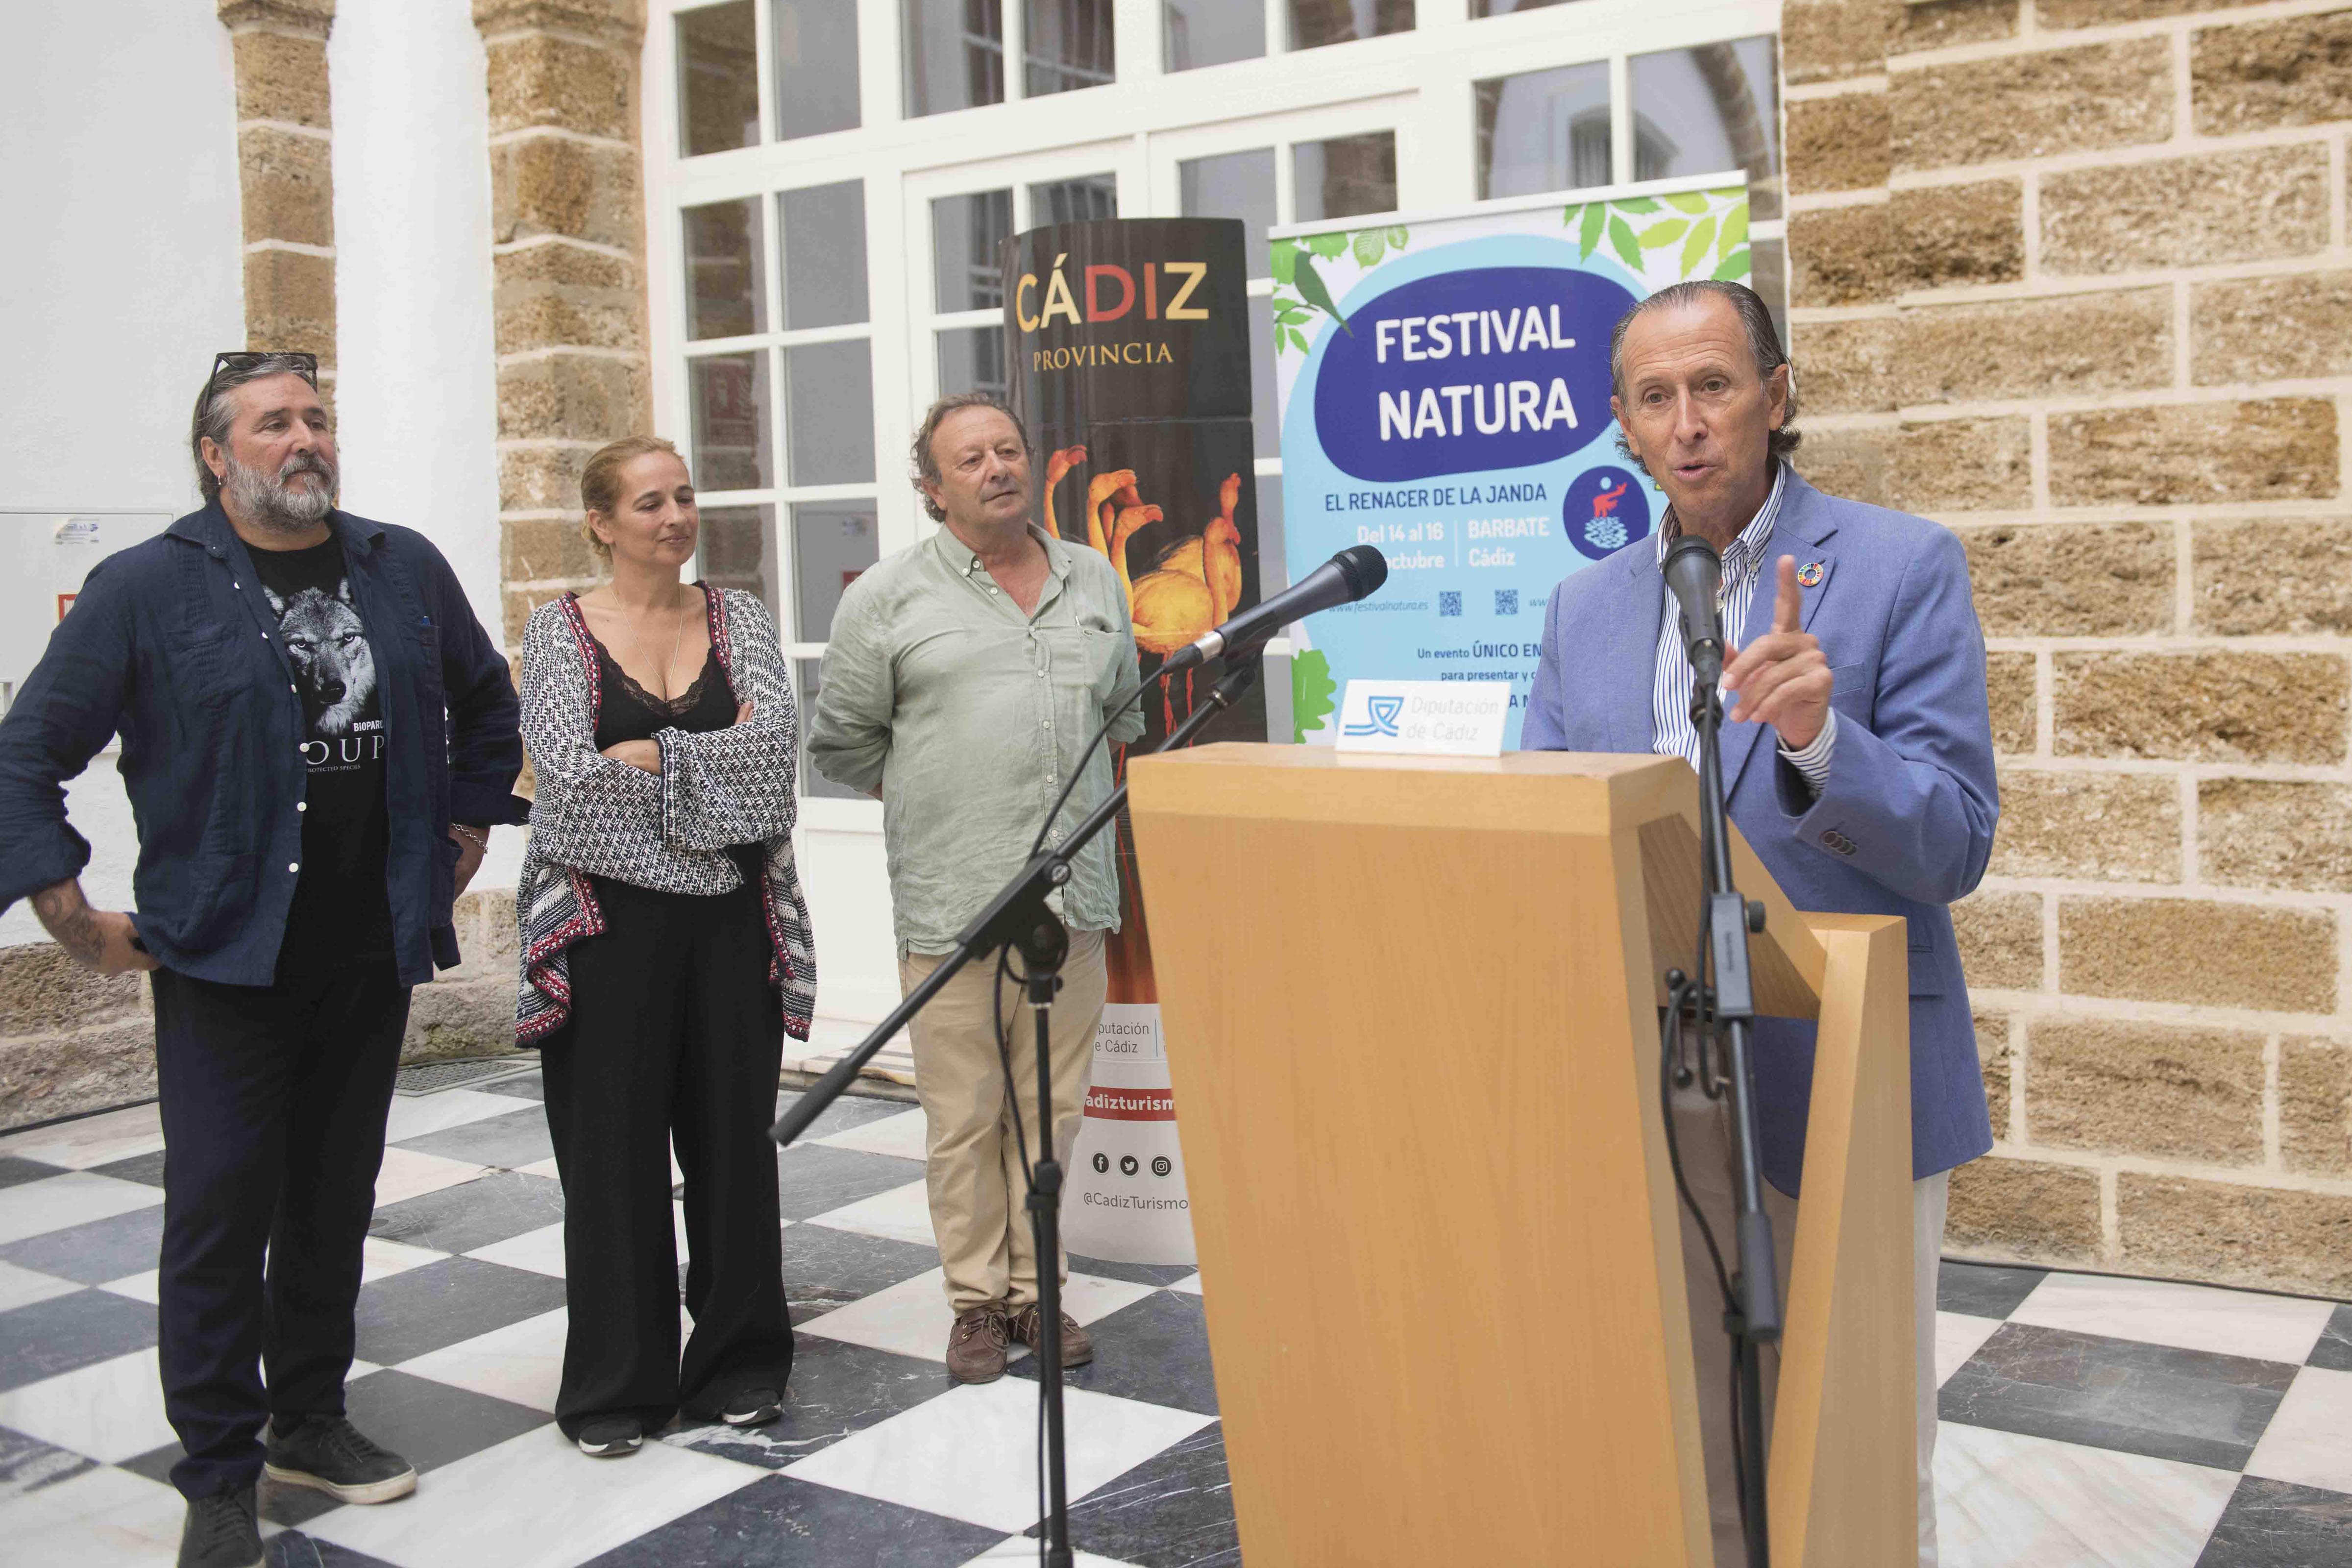 José María Román interviene en la presentación del Festival Natura